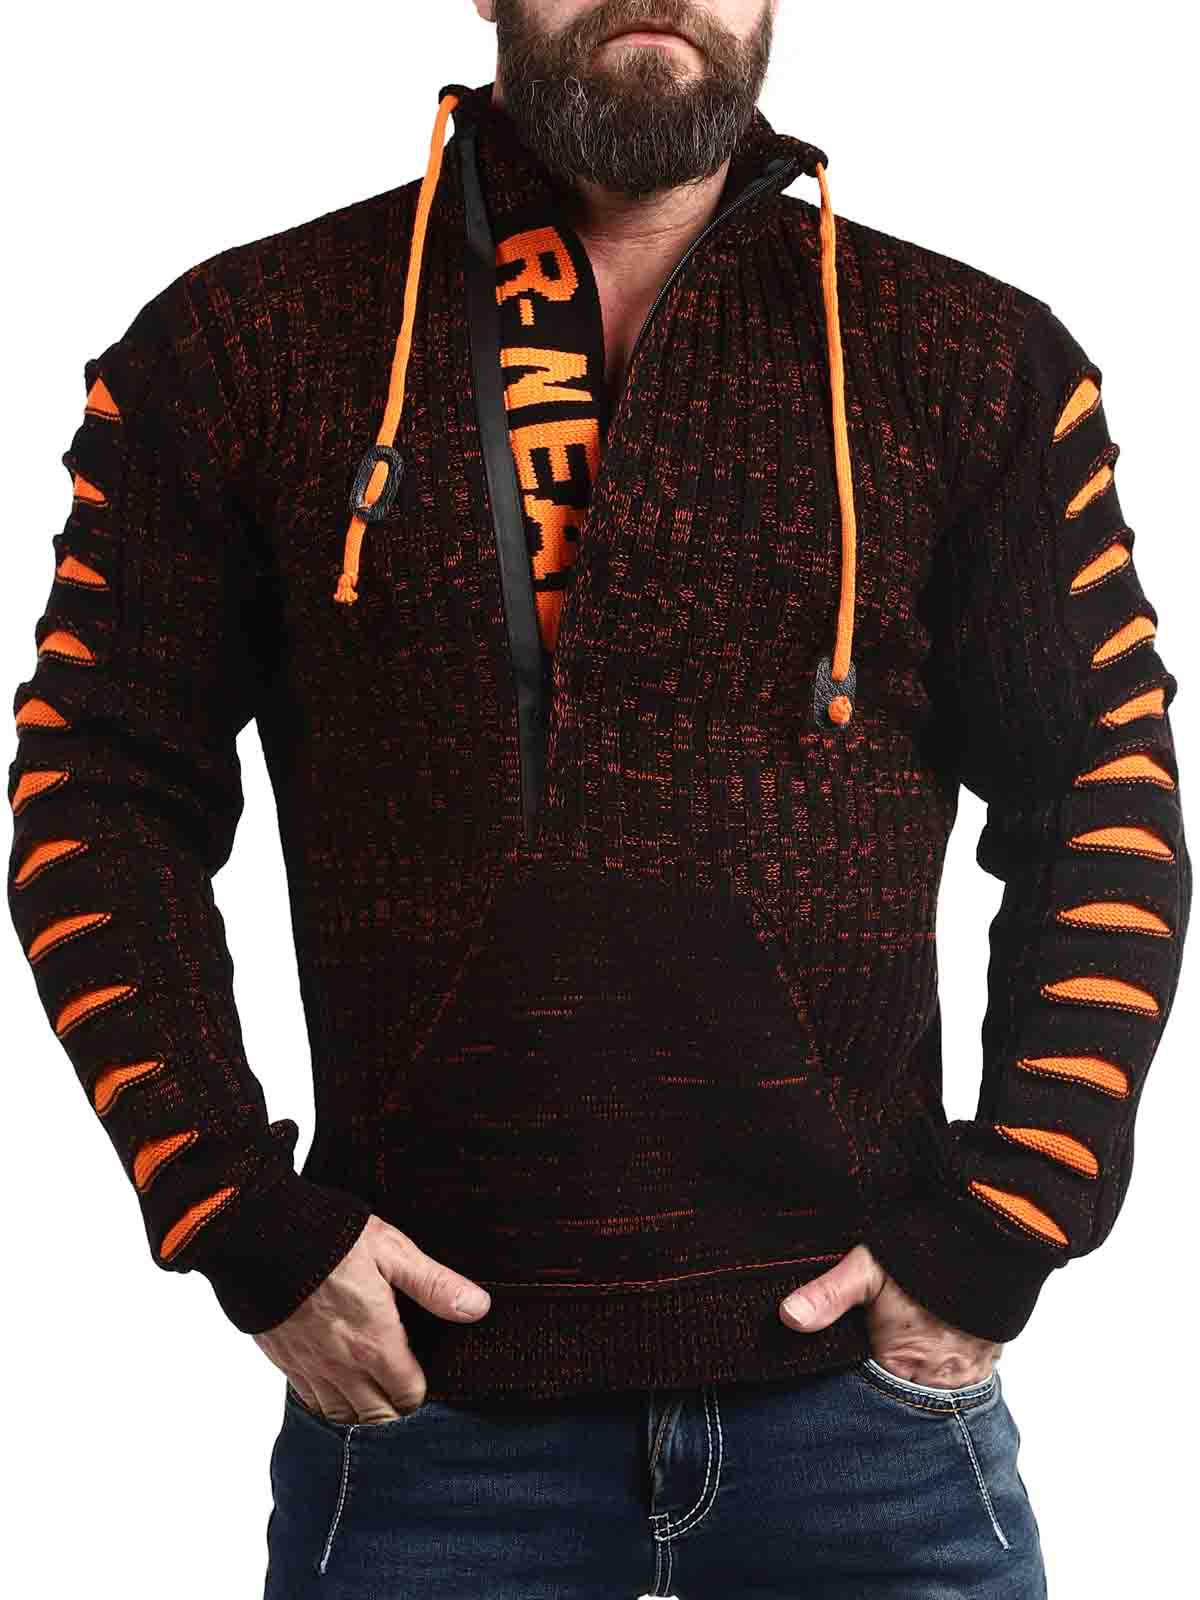 Bartoli Sweater Black Orange_5.jpg